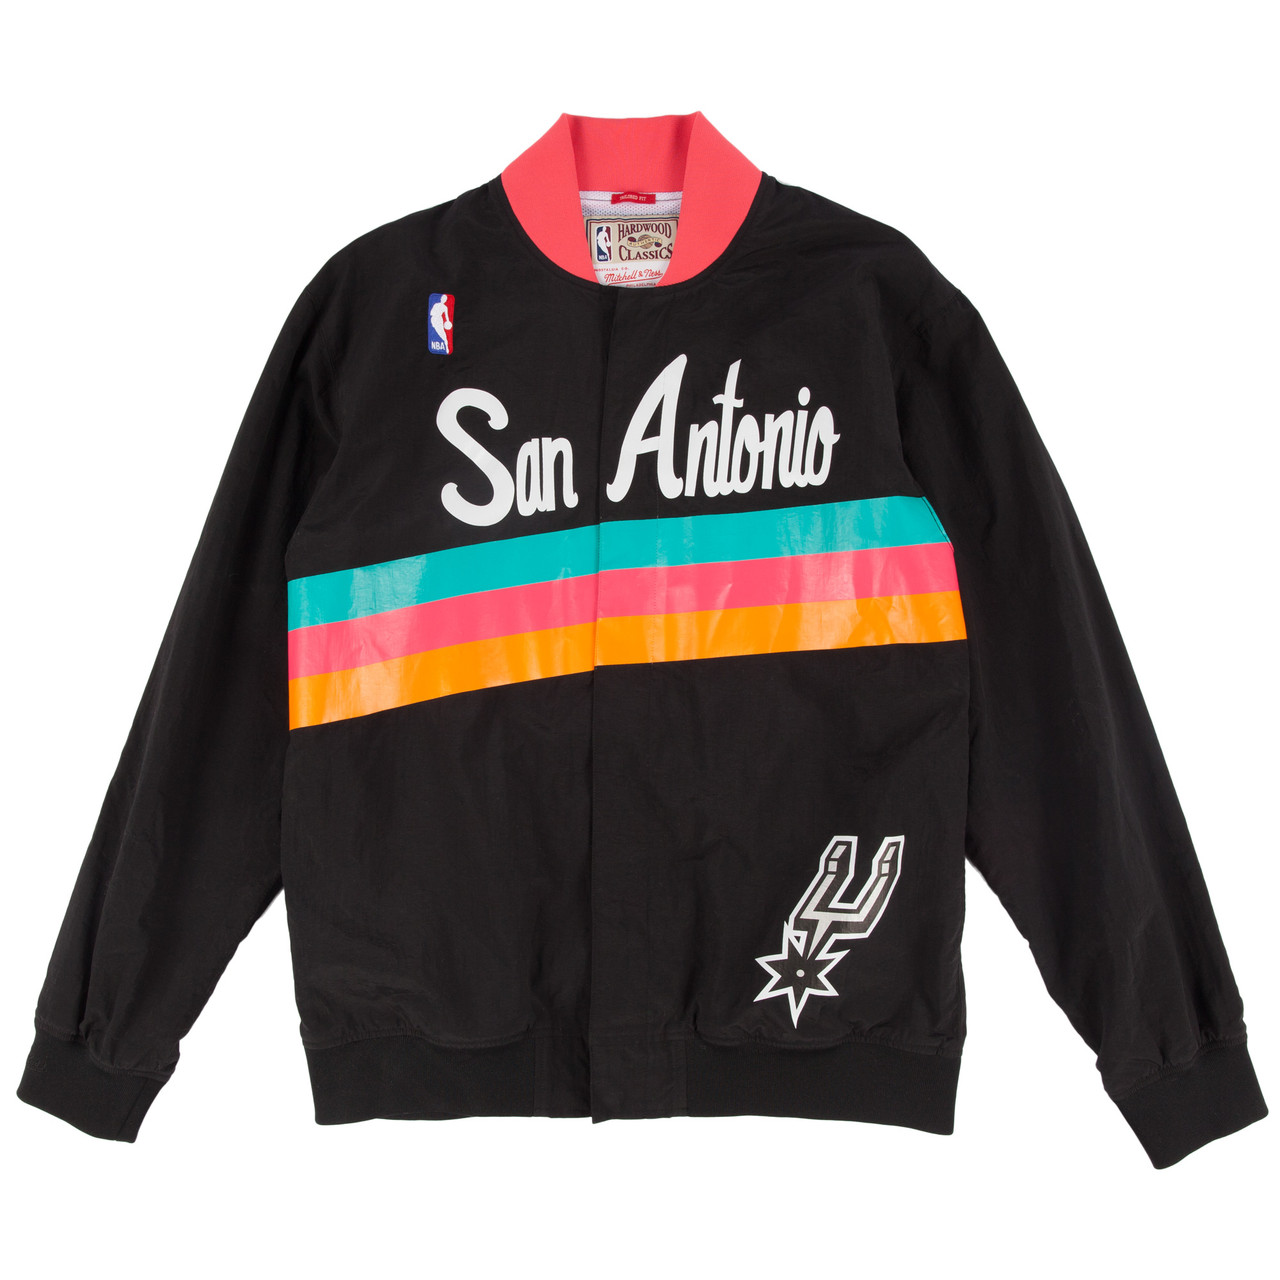 San Antonio Spurs presentó la esperada camiseta Fiesta